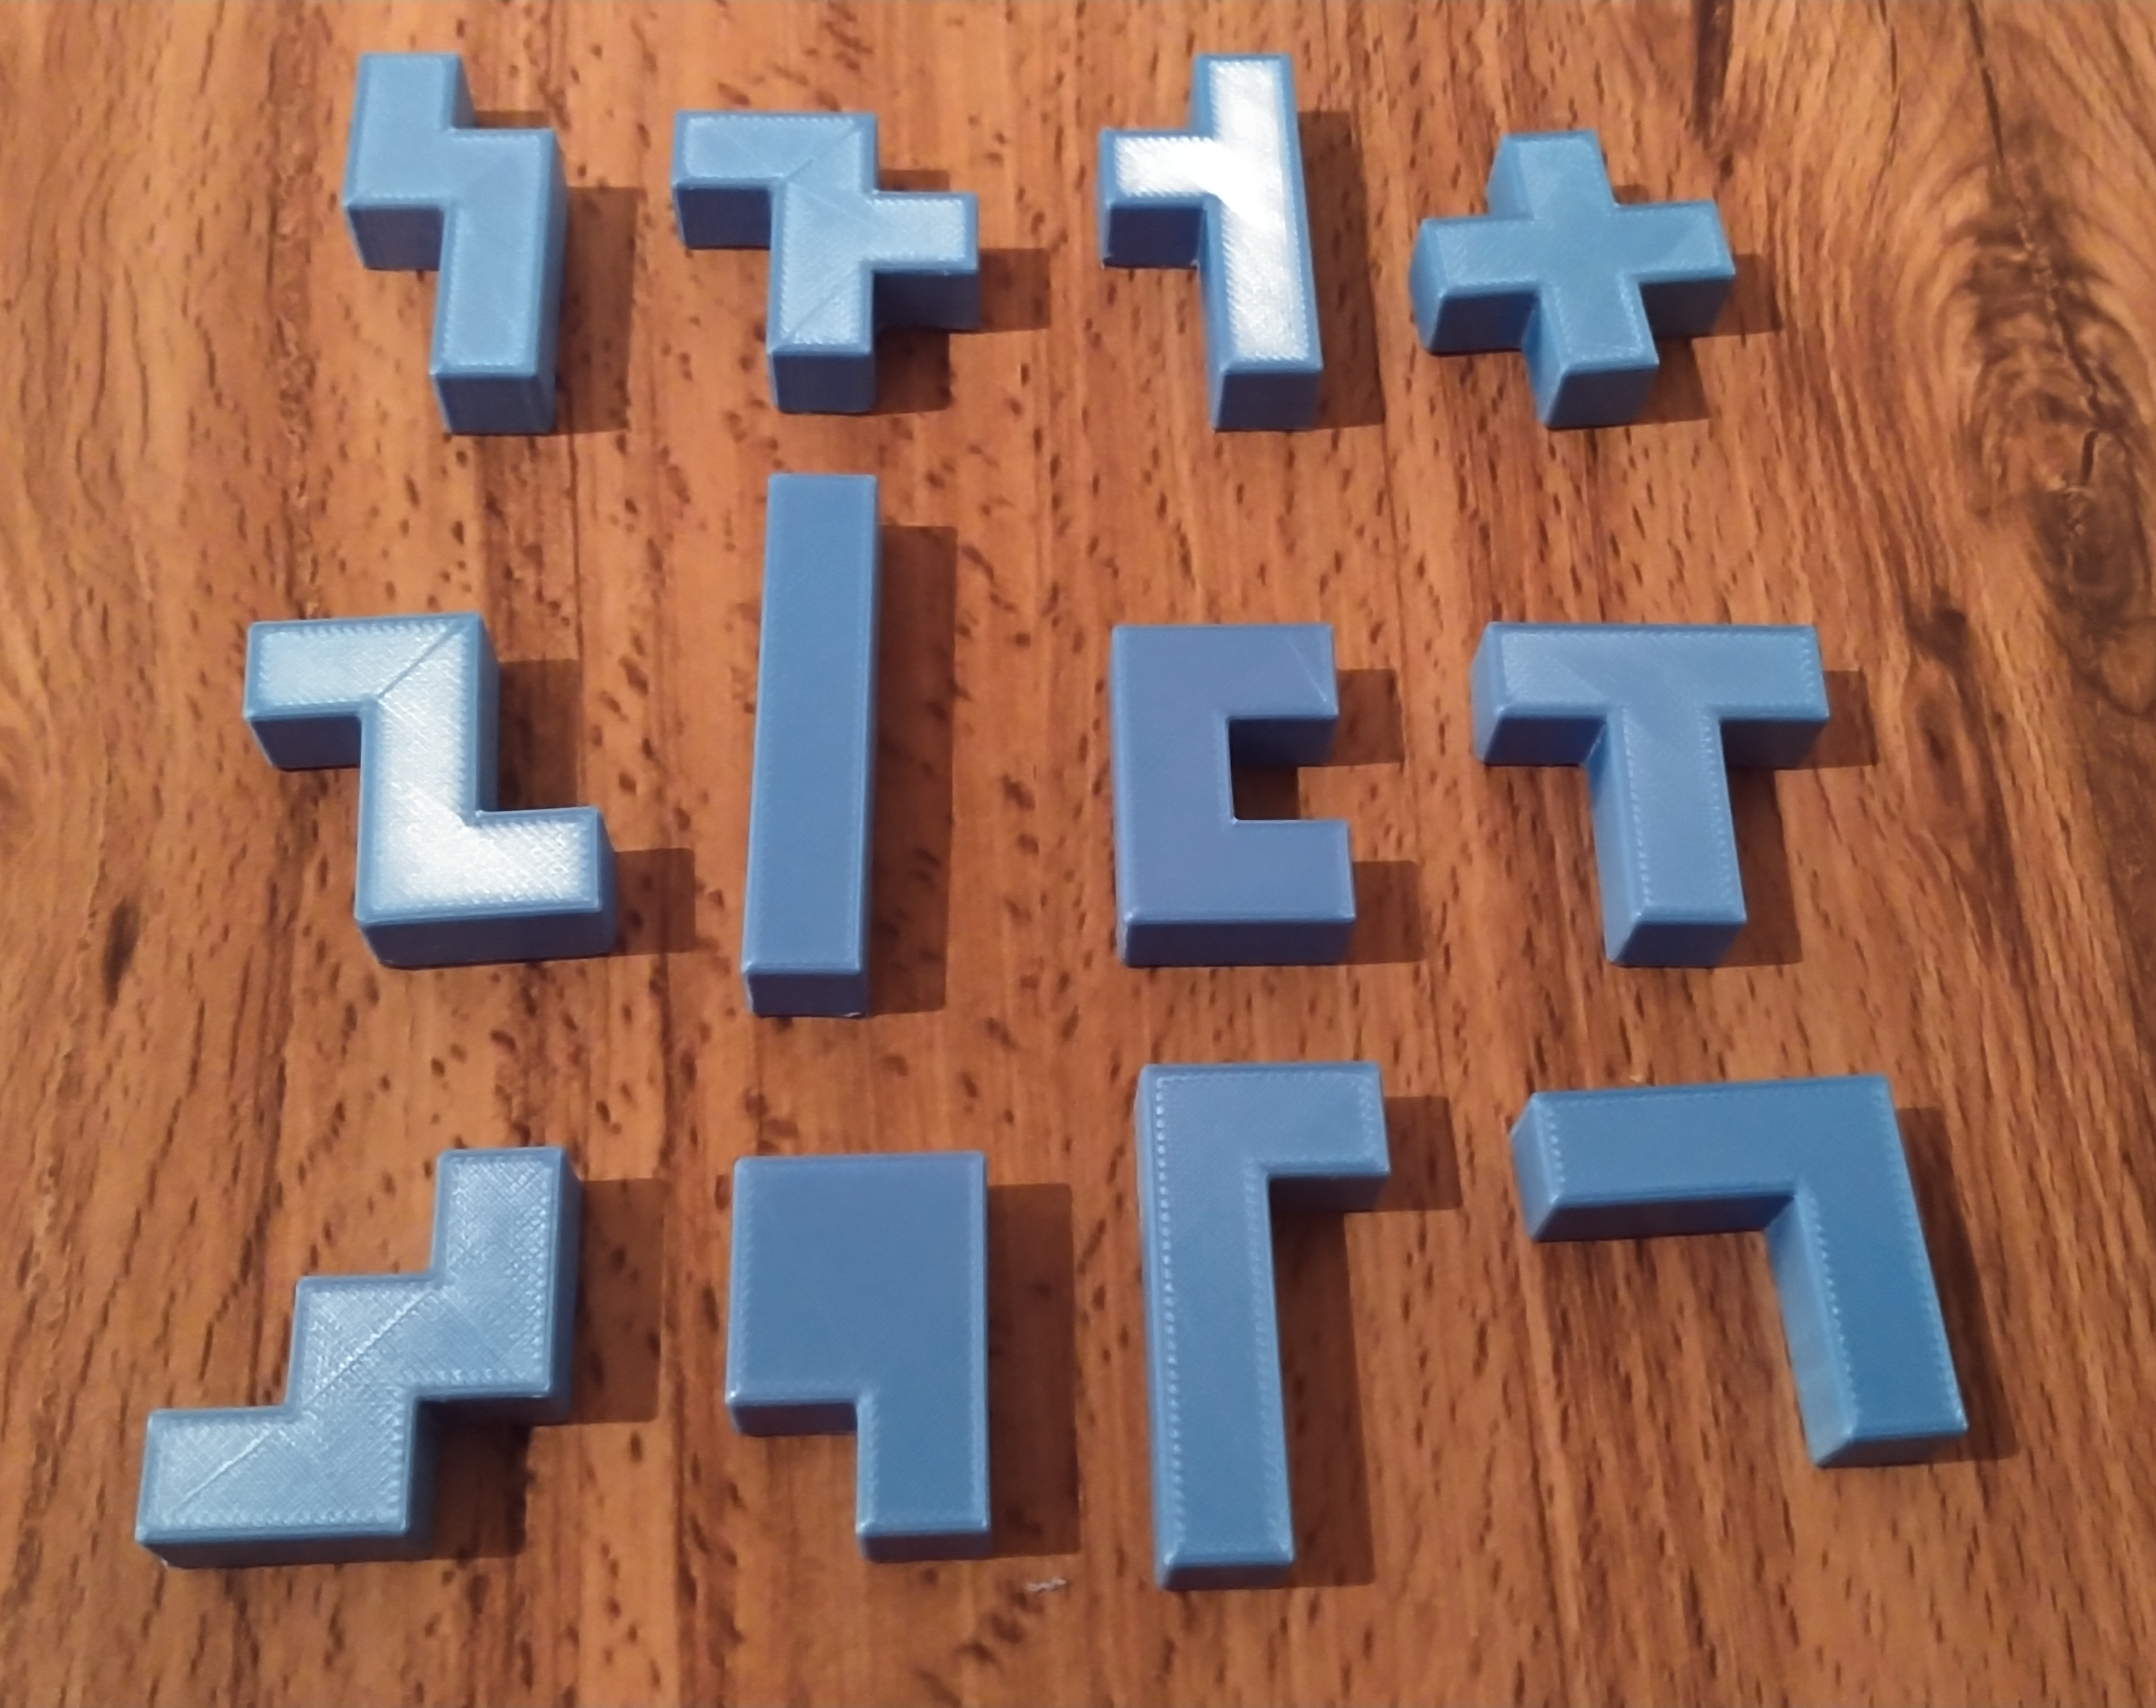 12 3D printed pentamino blocks